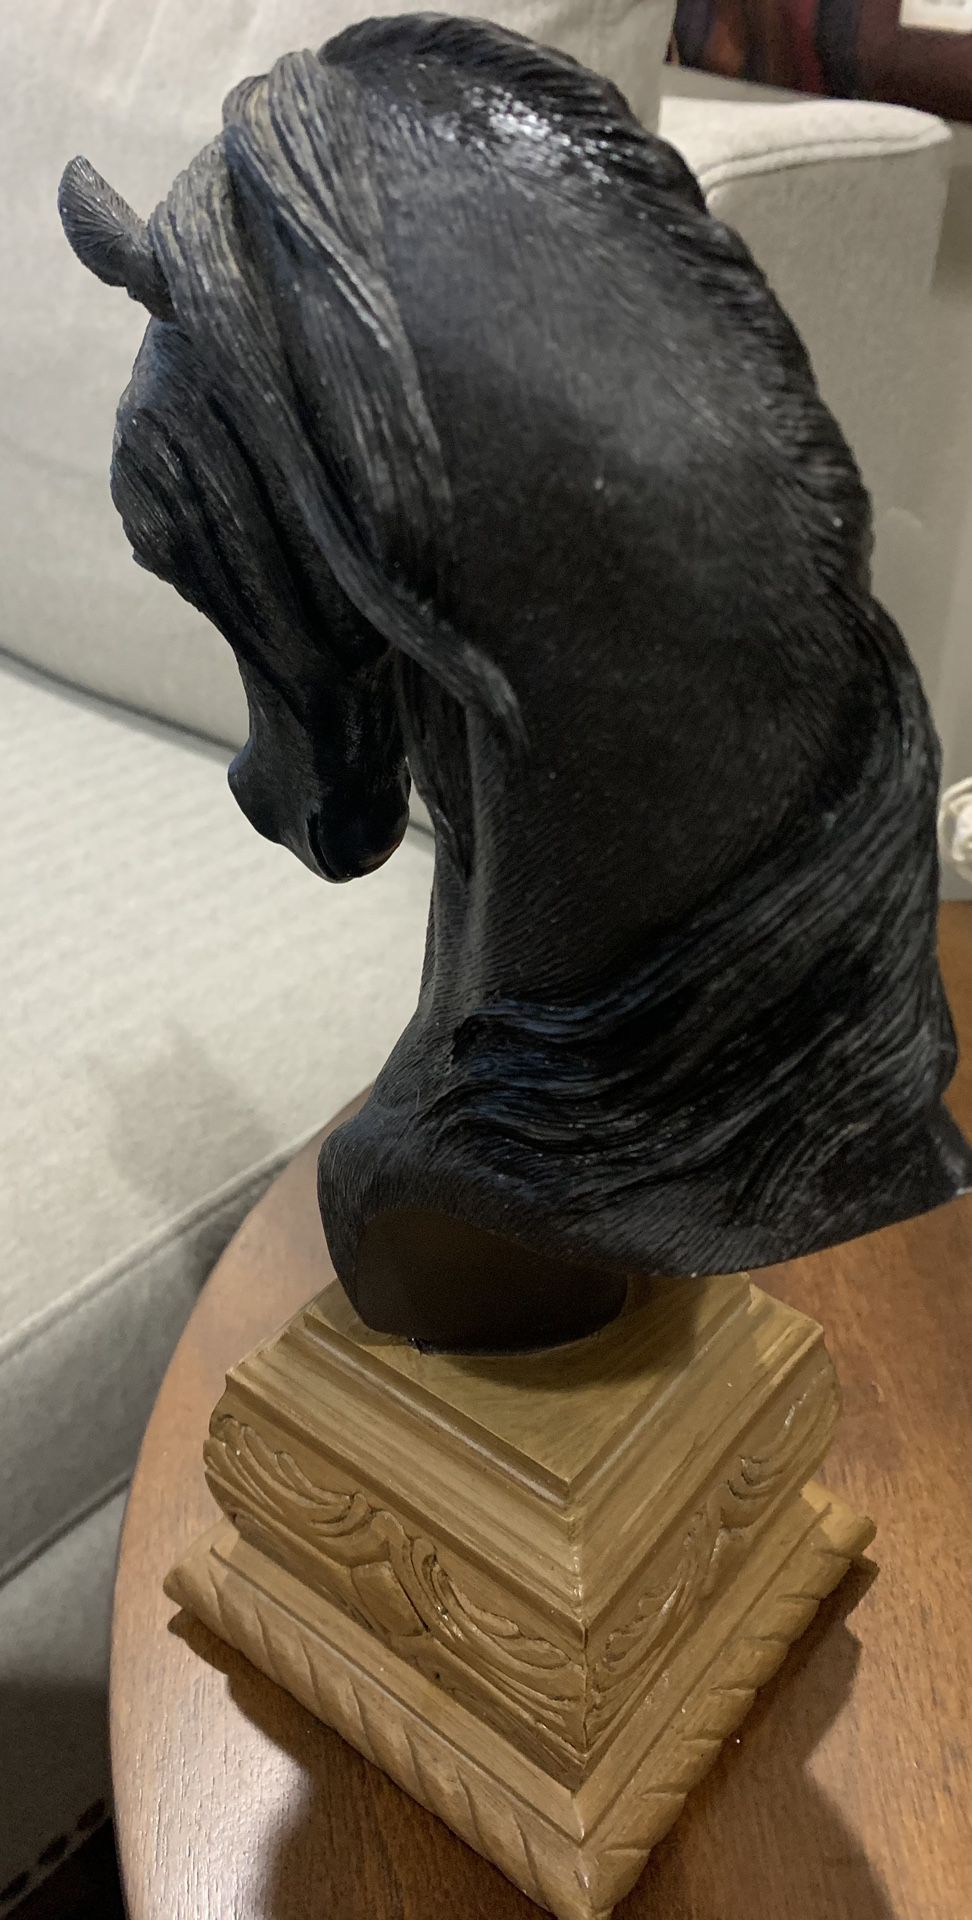 Equestrian Horse Head Statue 11 1/2in